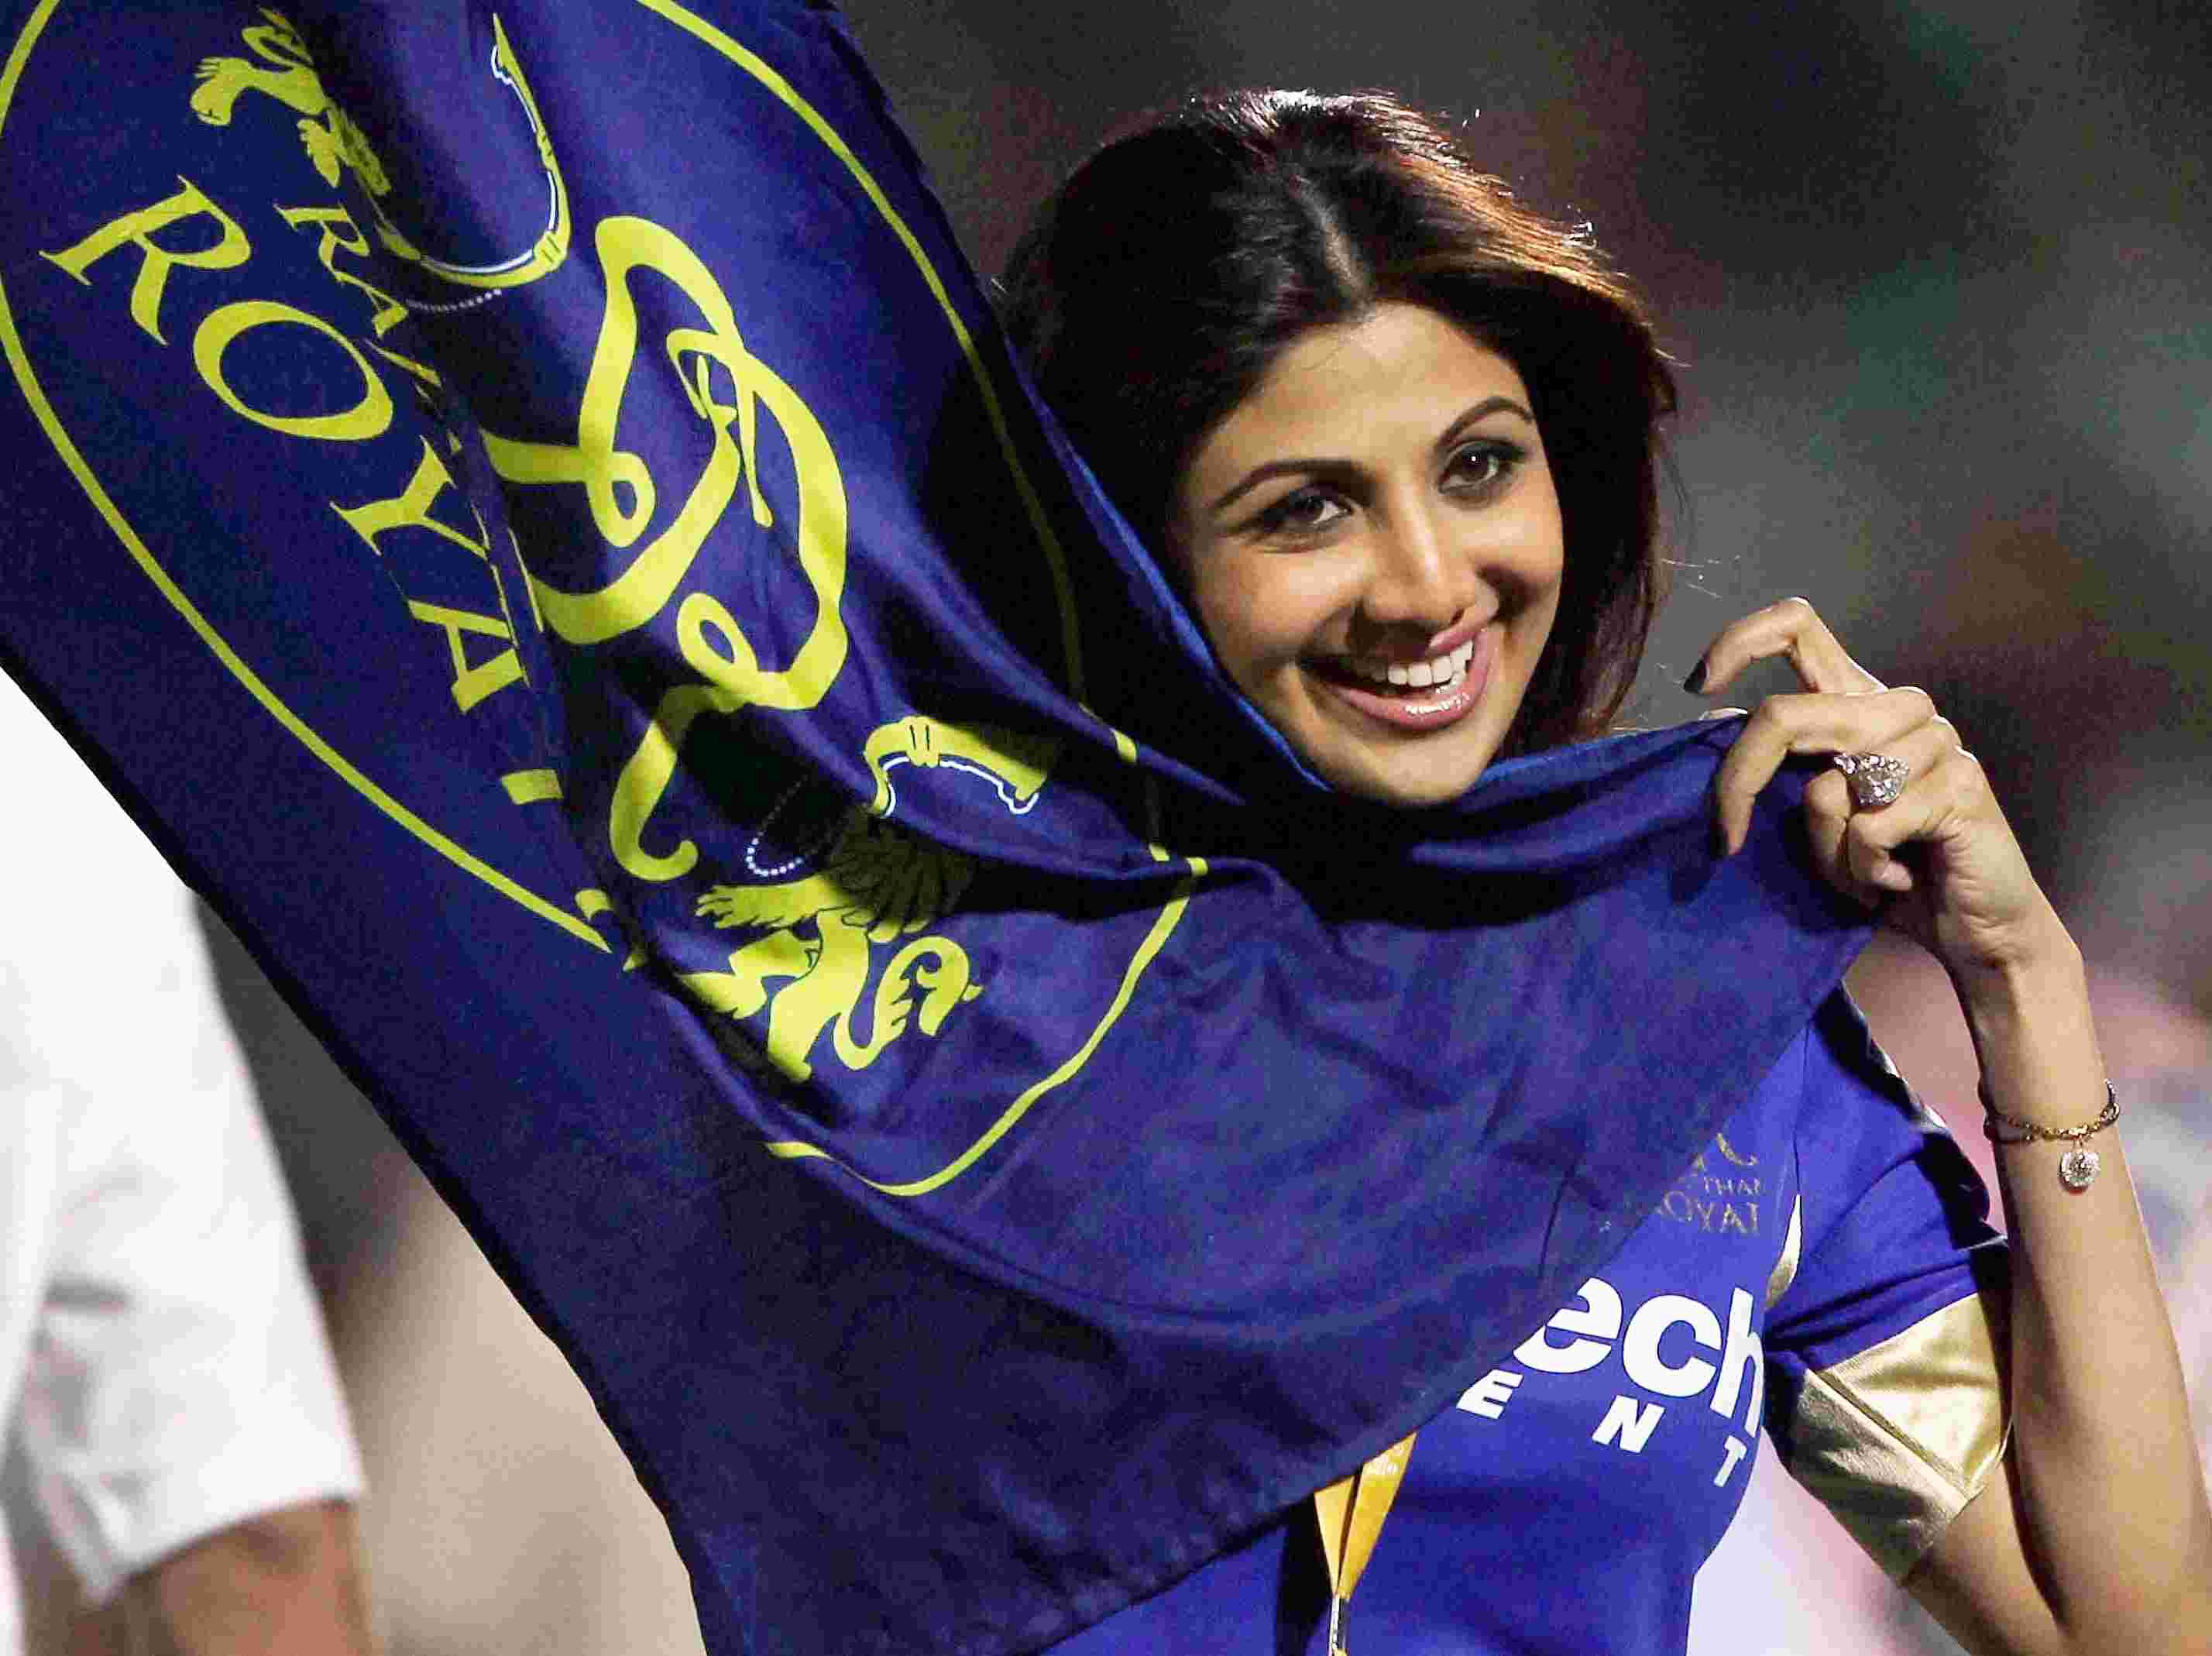 PICS: Shilpa Shetty in IPL Mood